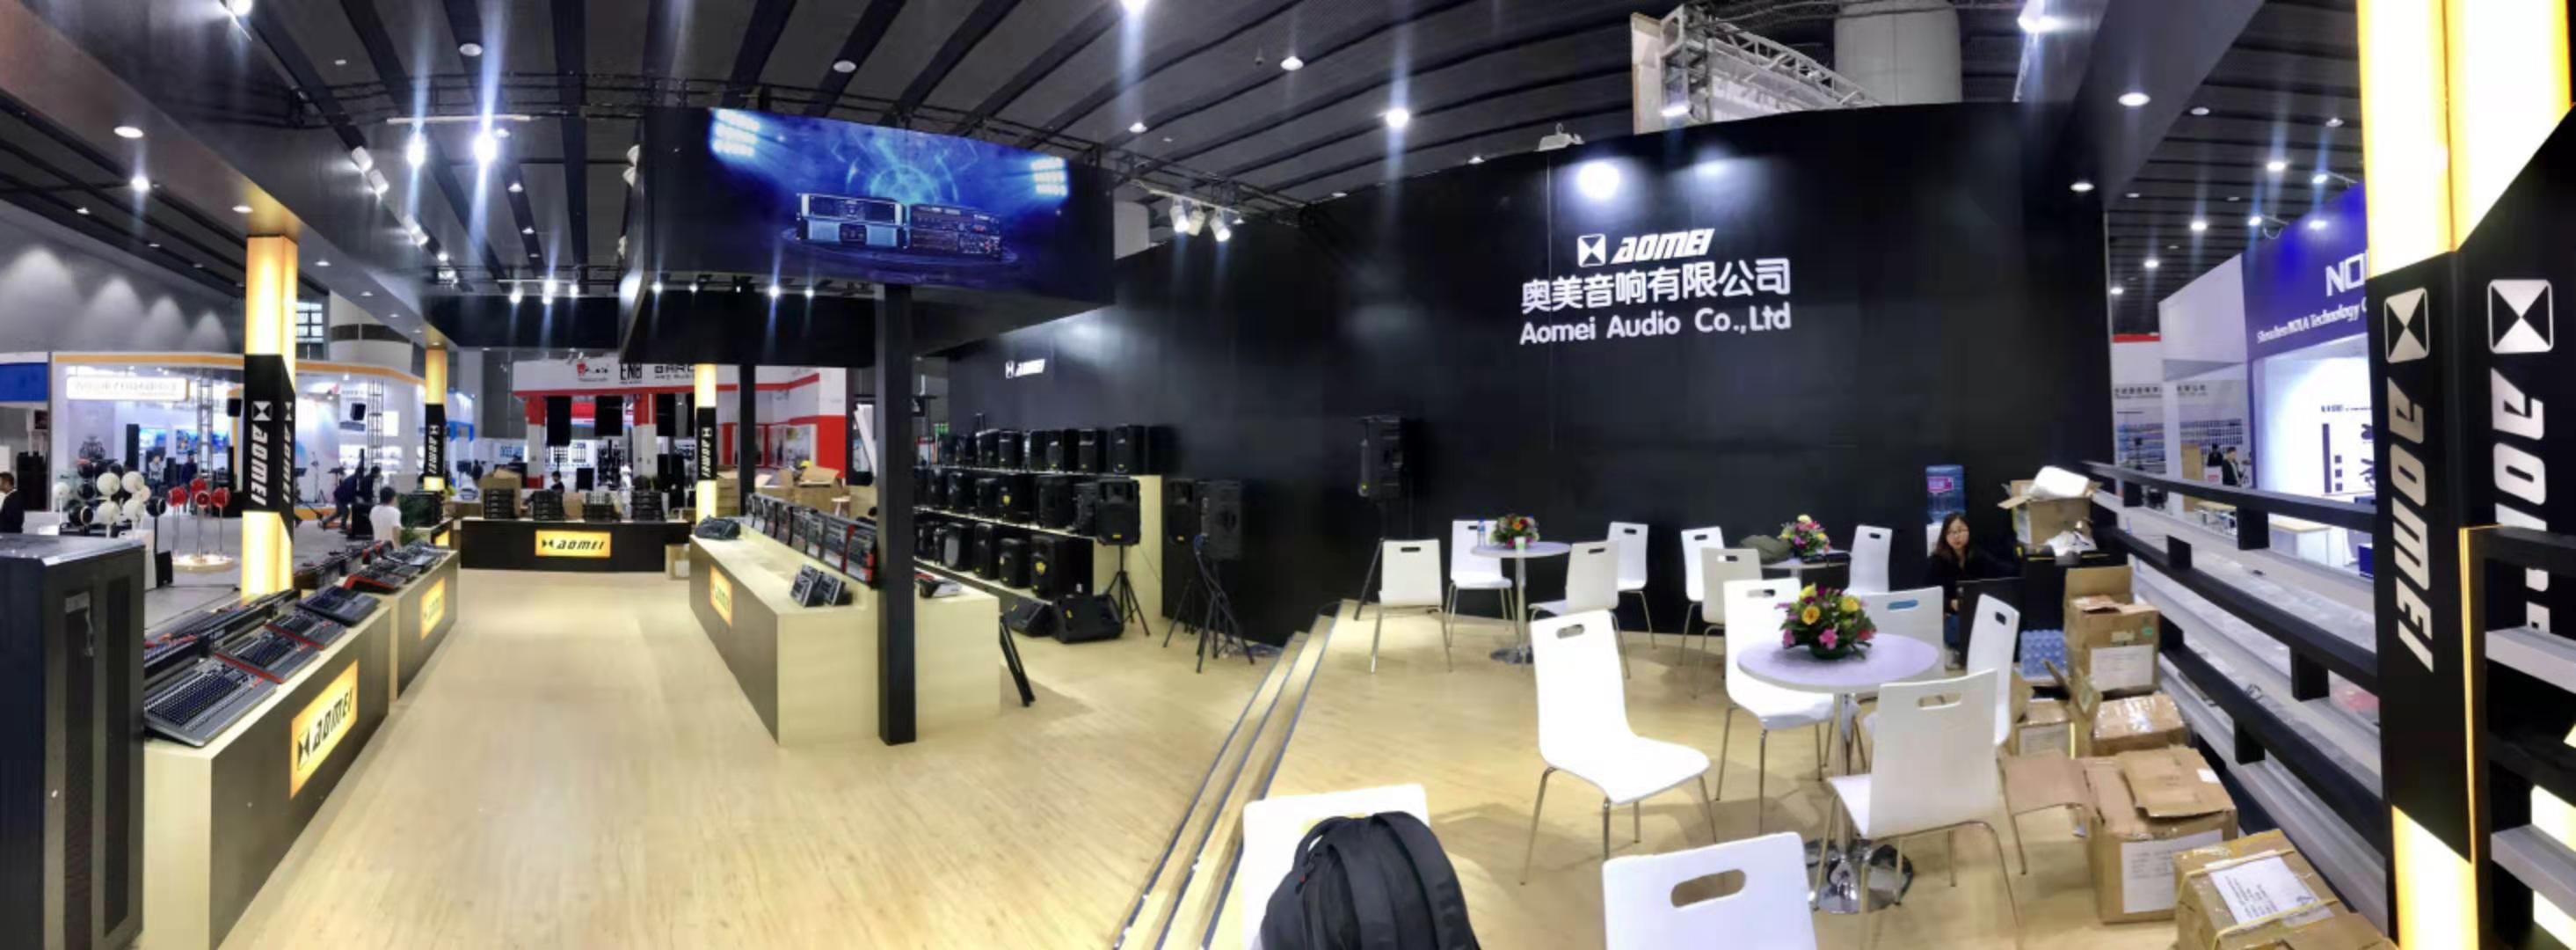 2019 Guangzhou Exhibition